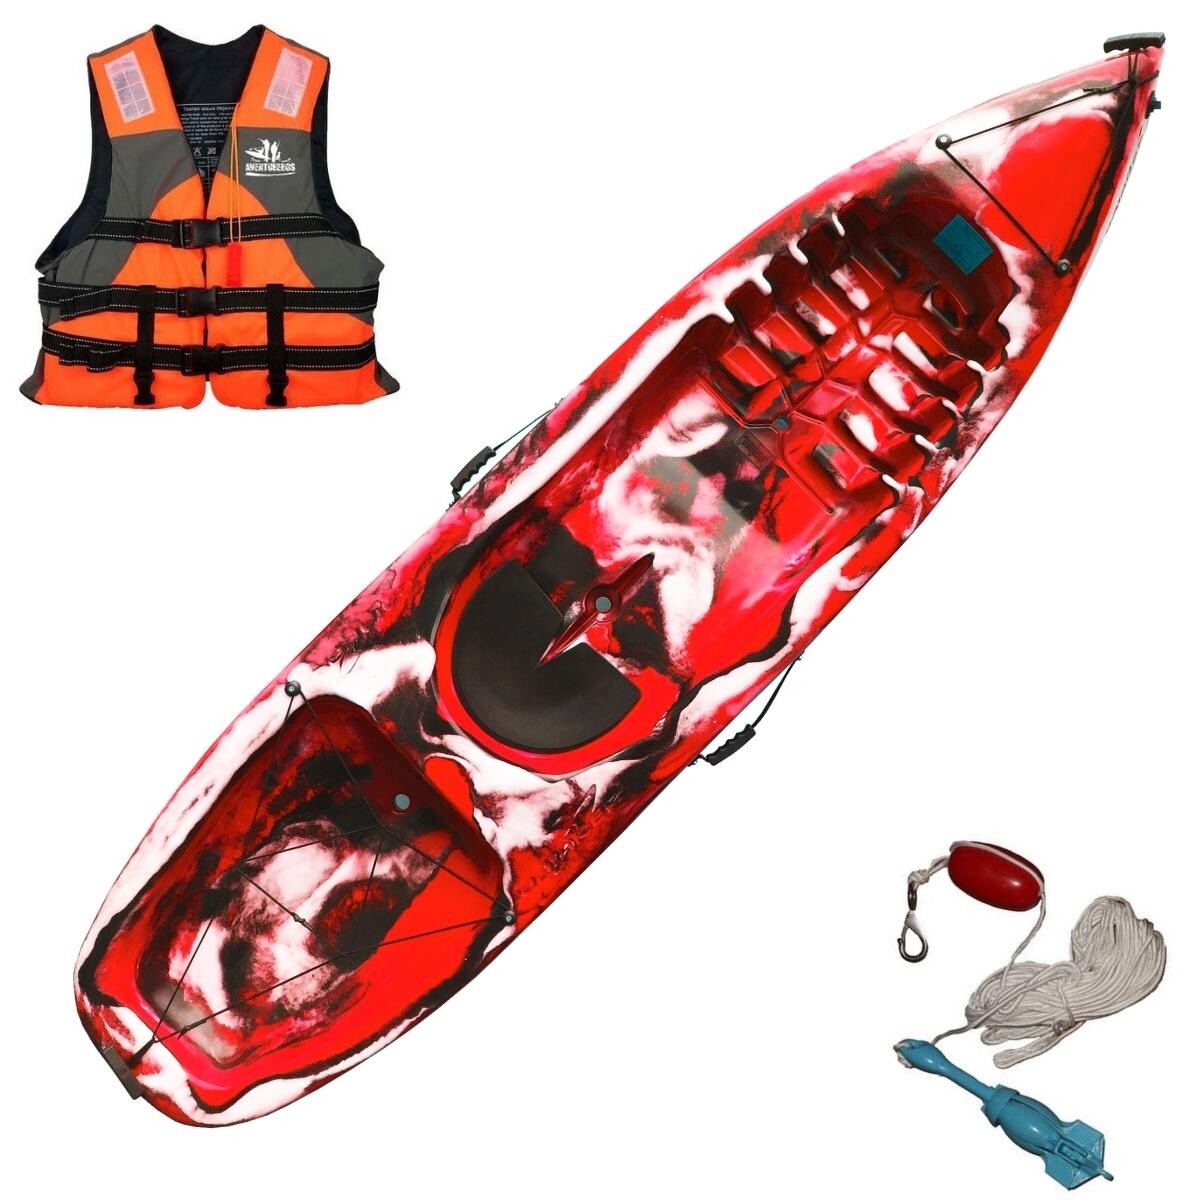 Kayak Caiaker Pinguim - Camo Rojo 